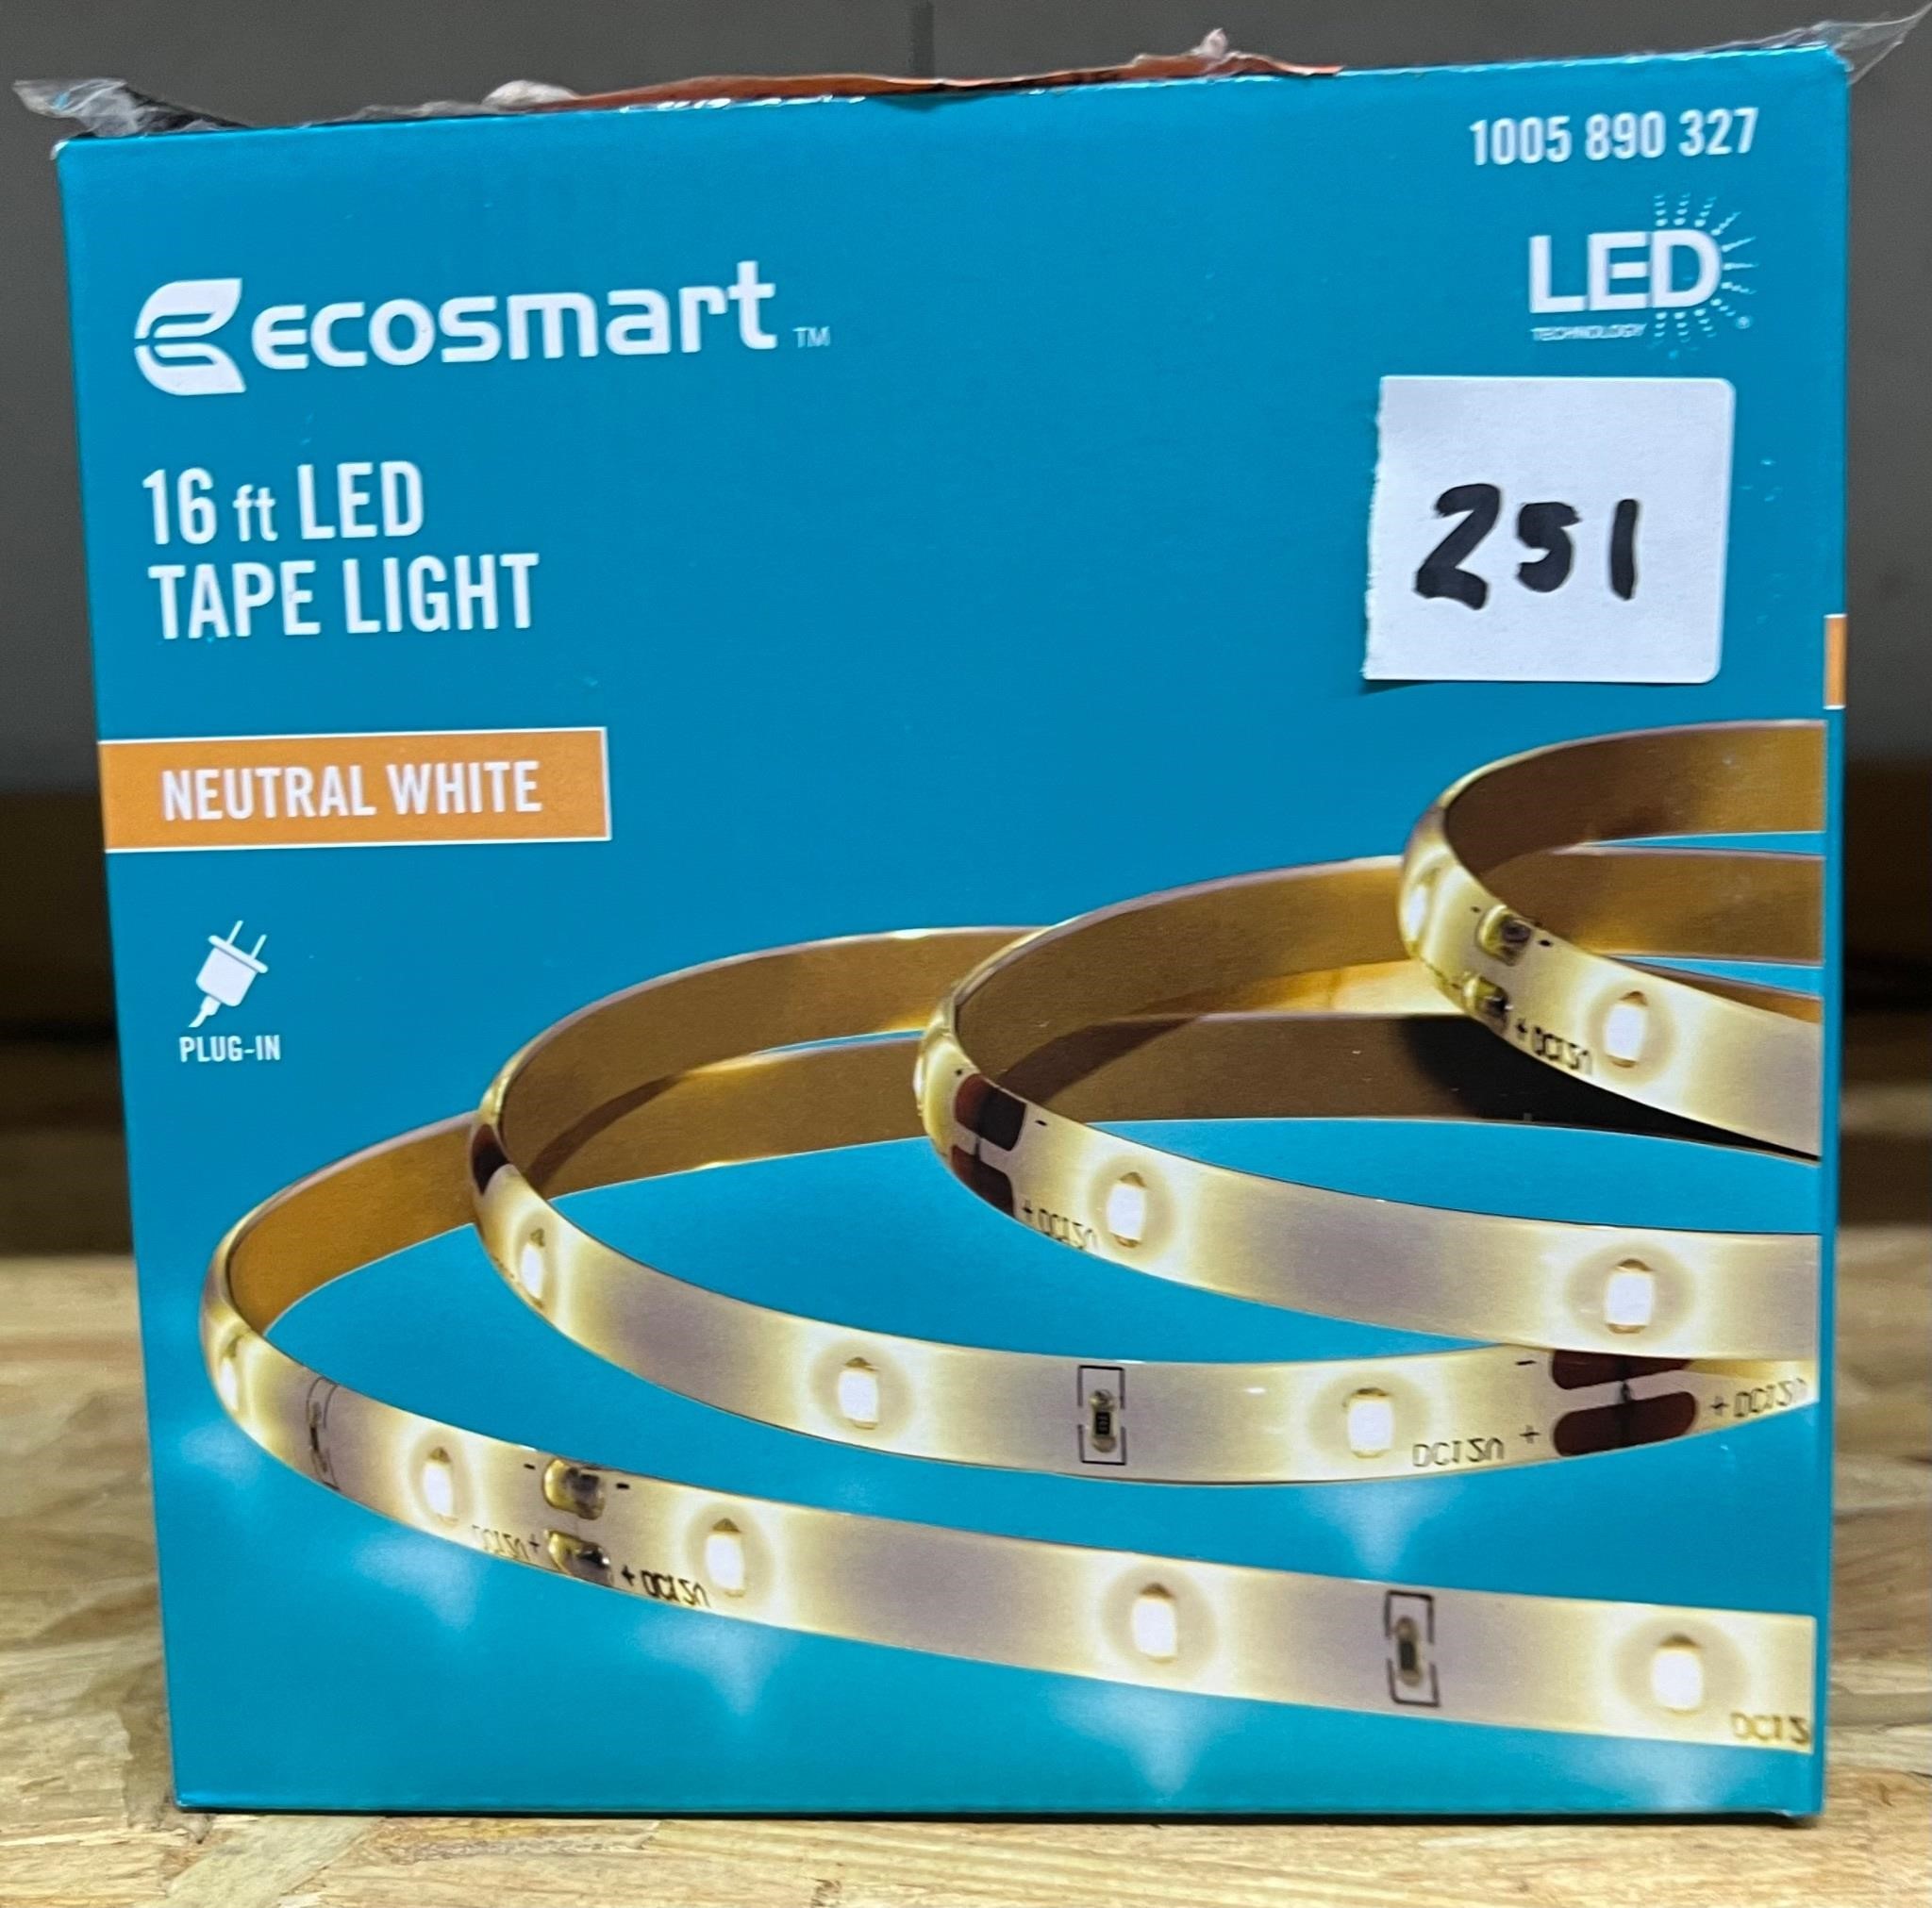 EcoSmart 16ft LED Tapelight, Neutral White